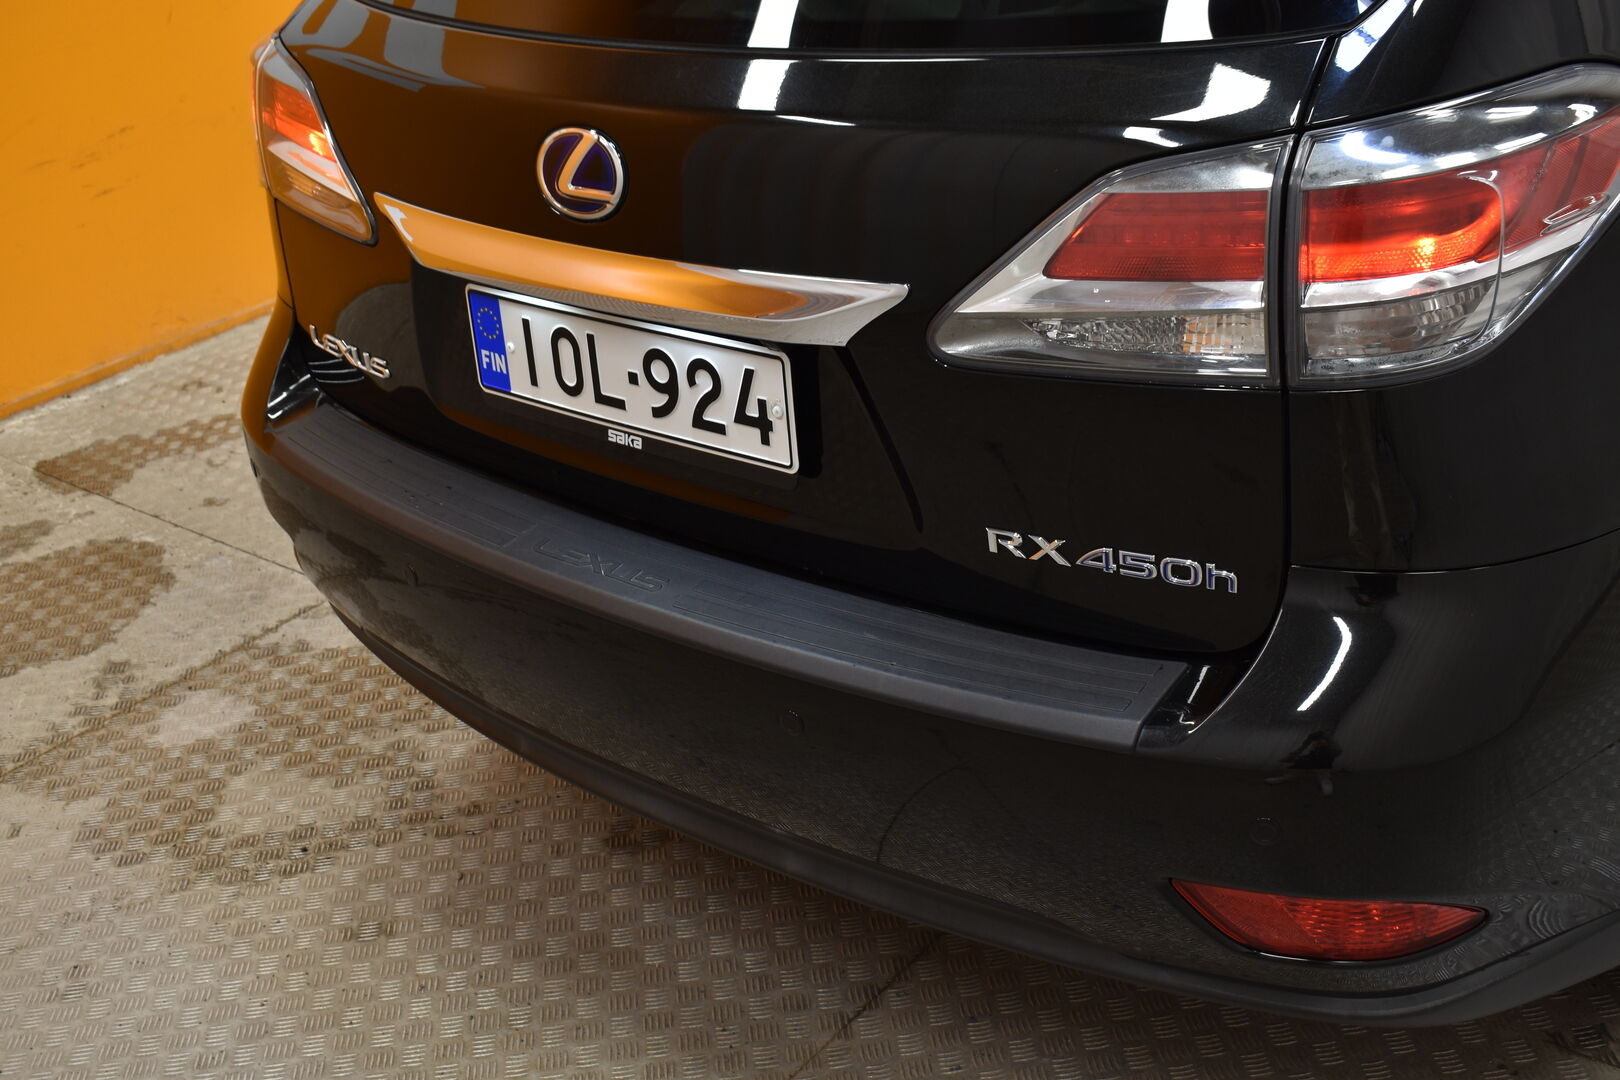 Musta Maastoauto, Lexus RX – IOL-924